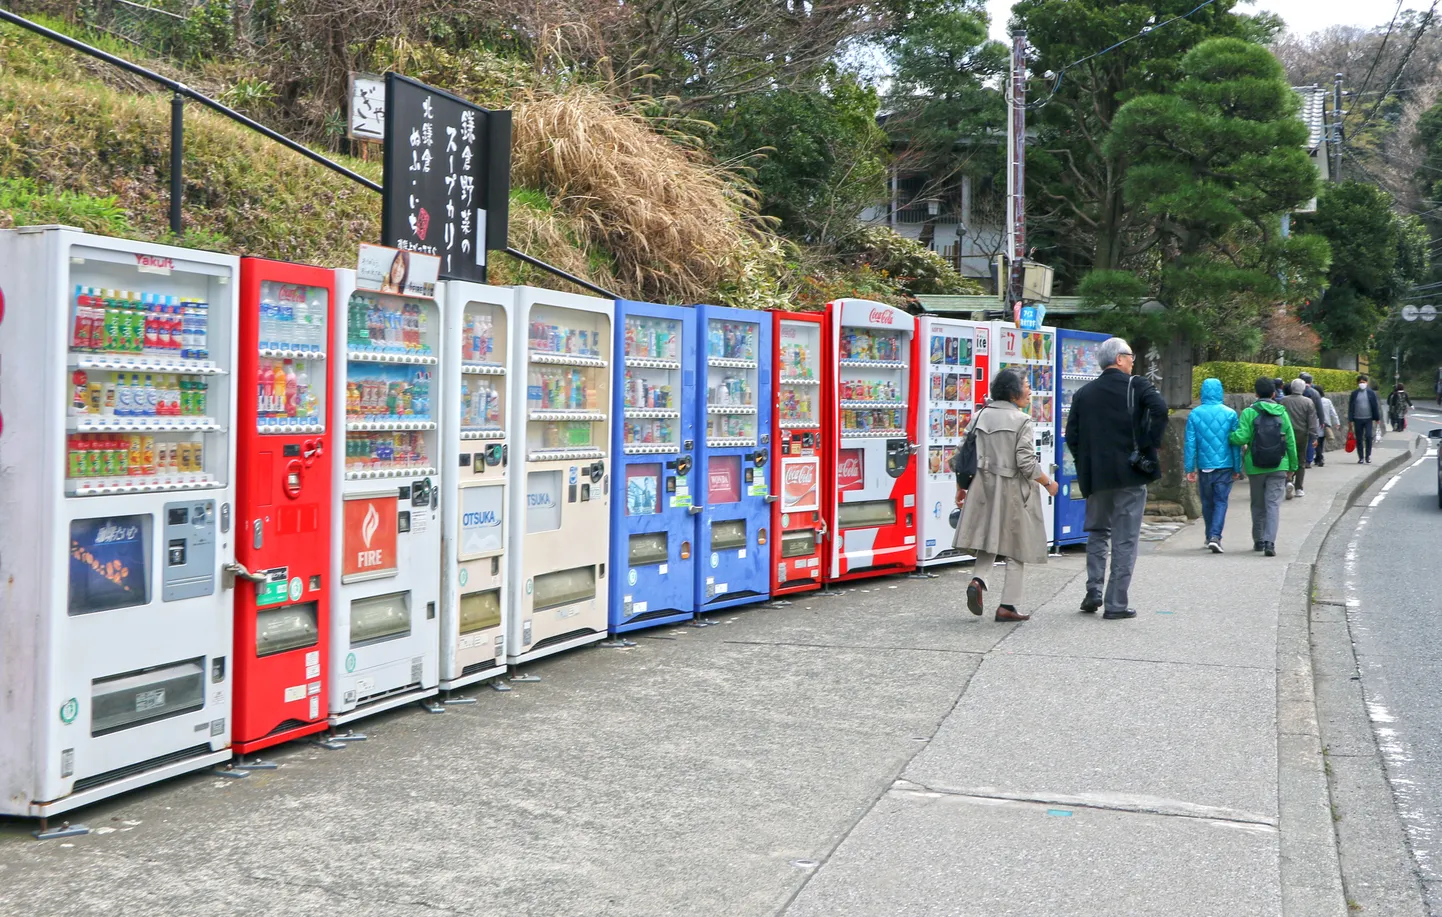 14 müügiautomaati reas Kamakuras. Kõik ei jäänud pildile.